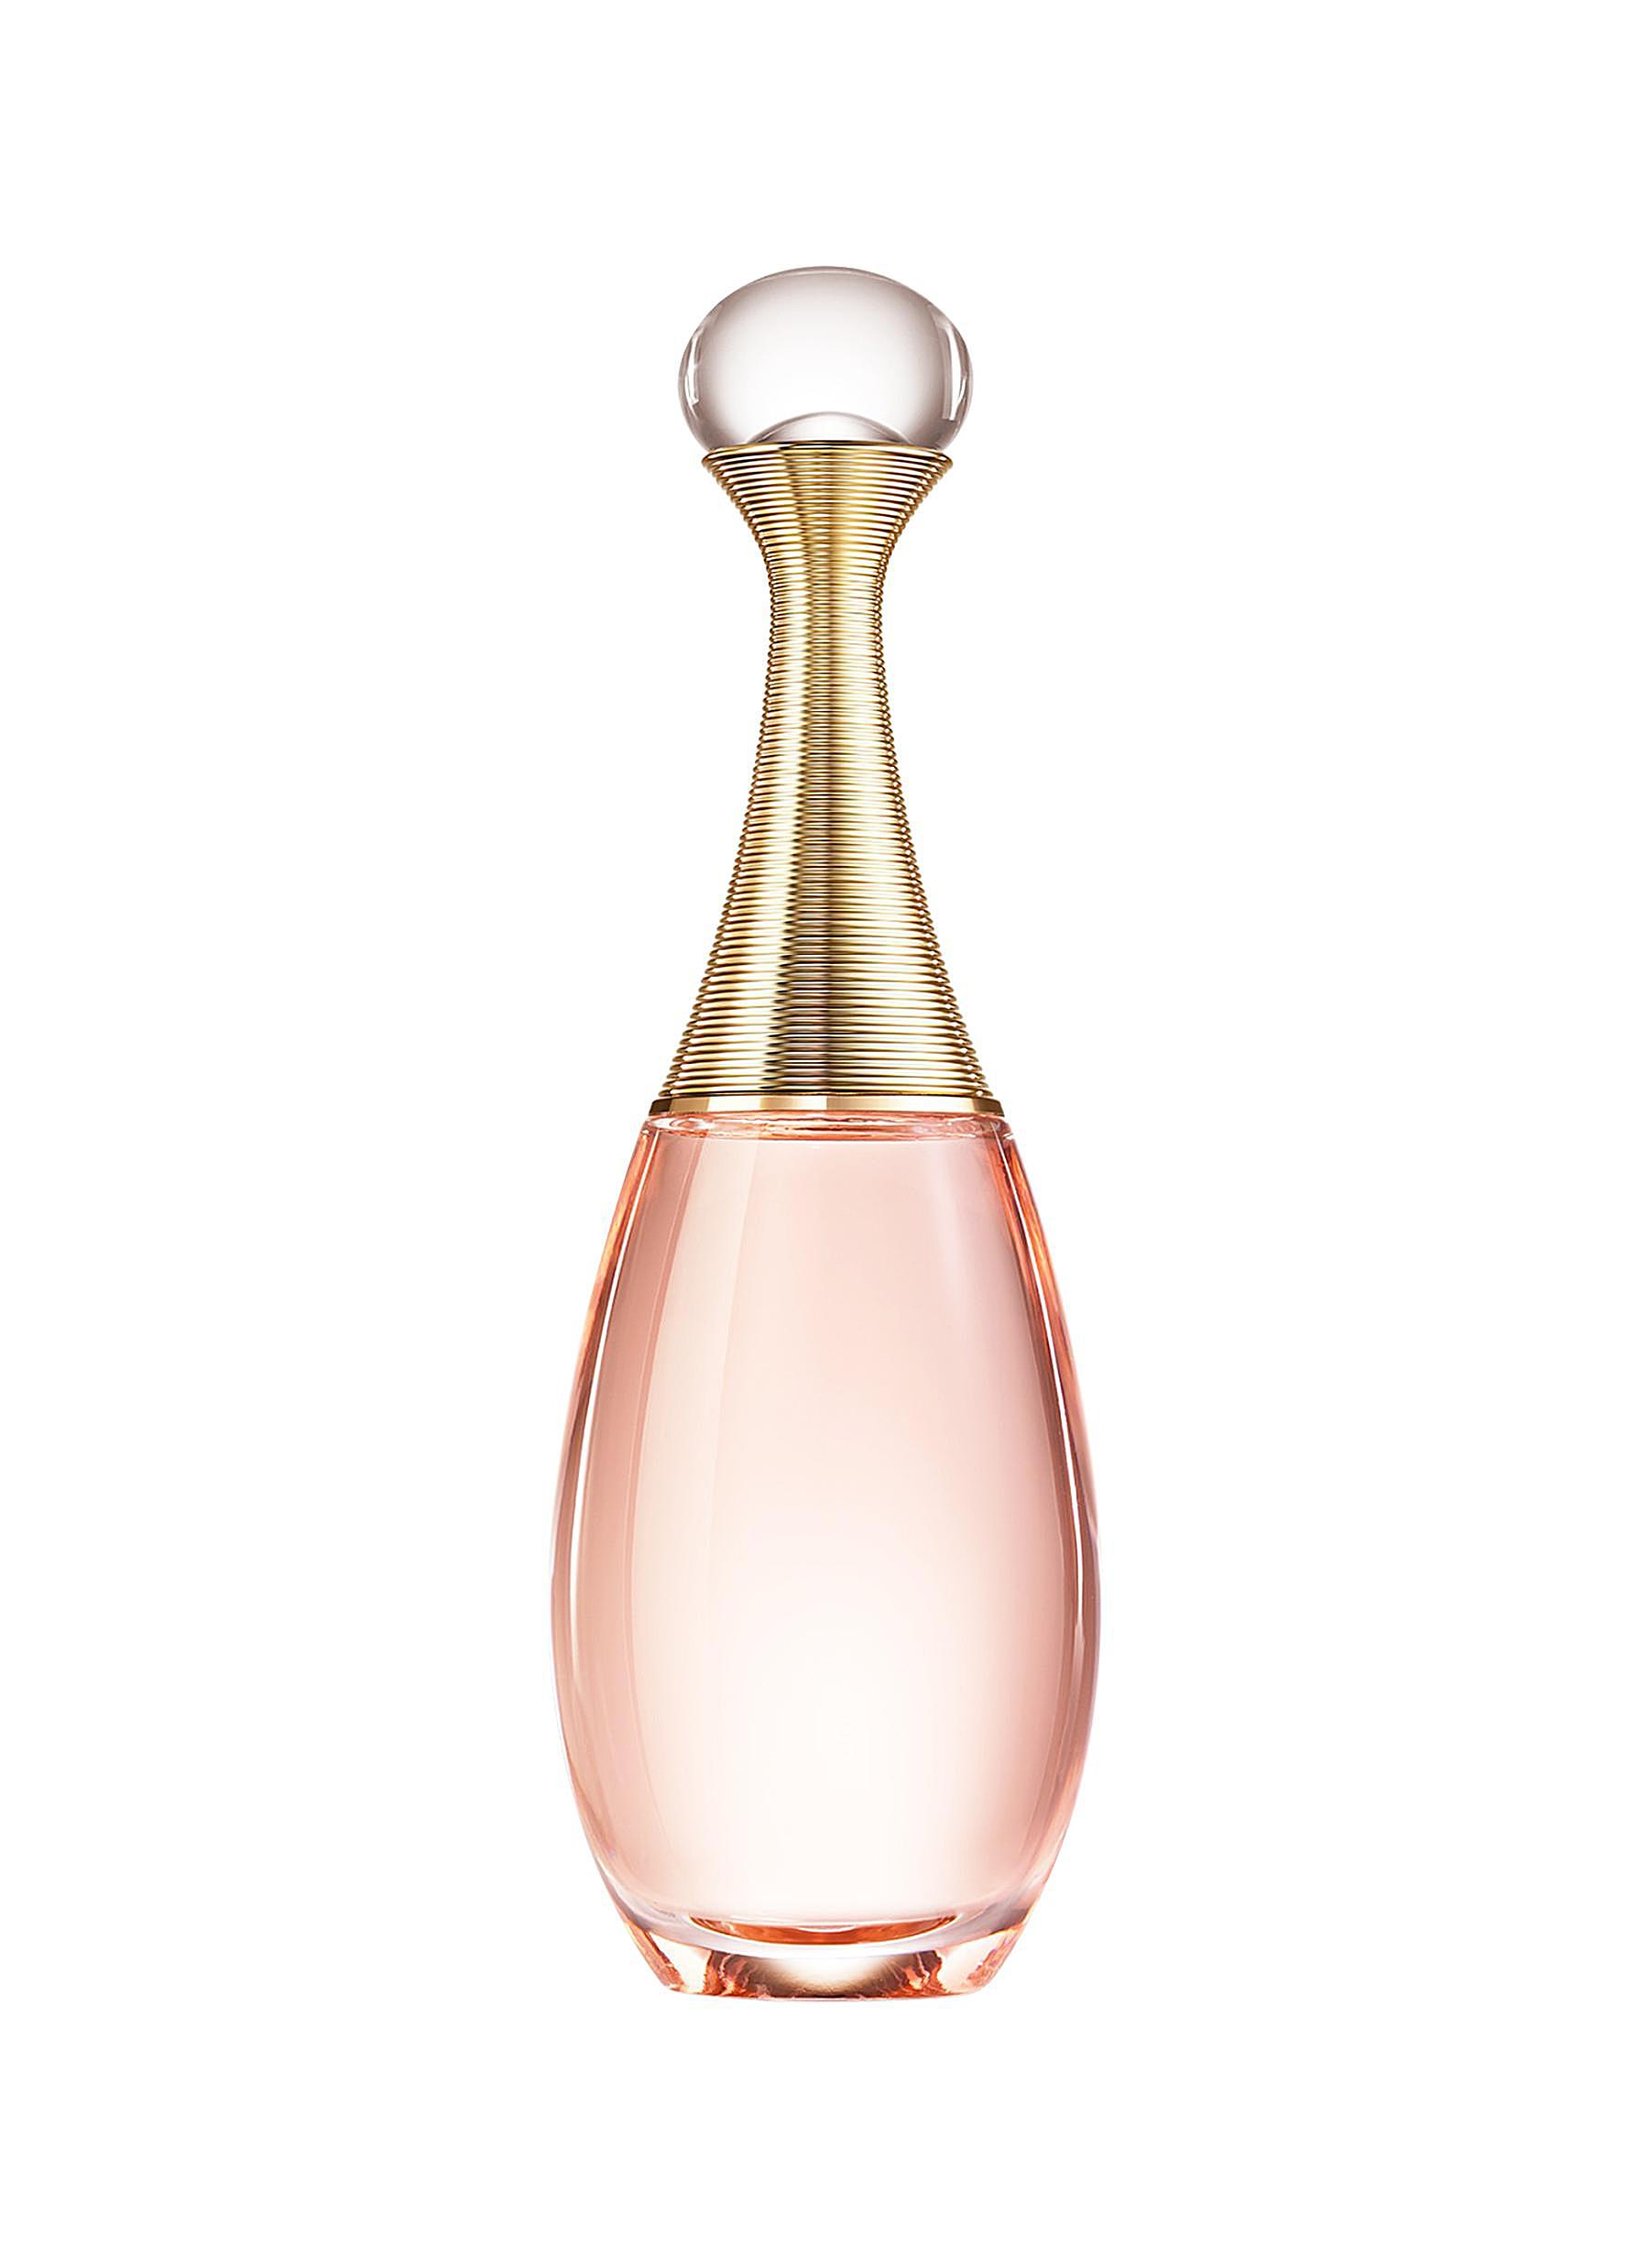 Christian Dior Jadore in Joy EdT 50 ml eau de toilette Ladies  VMD  parfumerie  drogerie